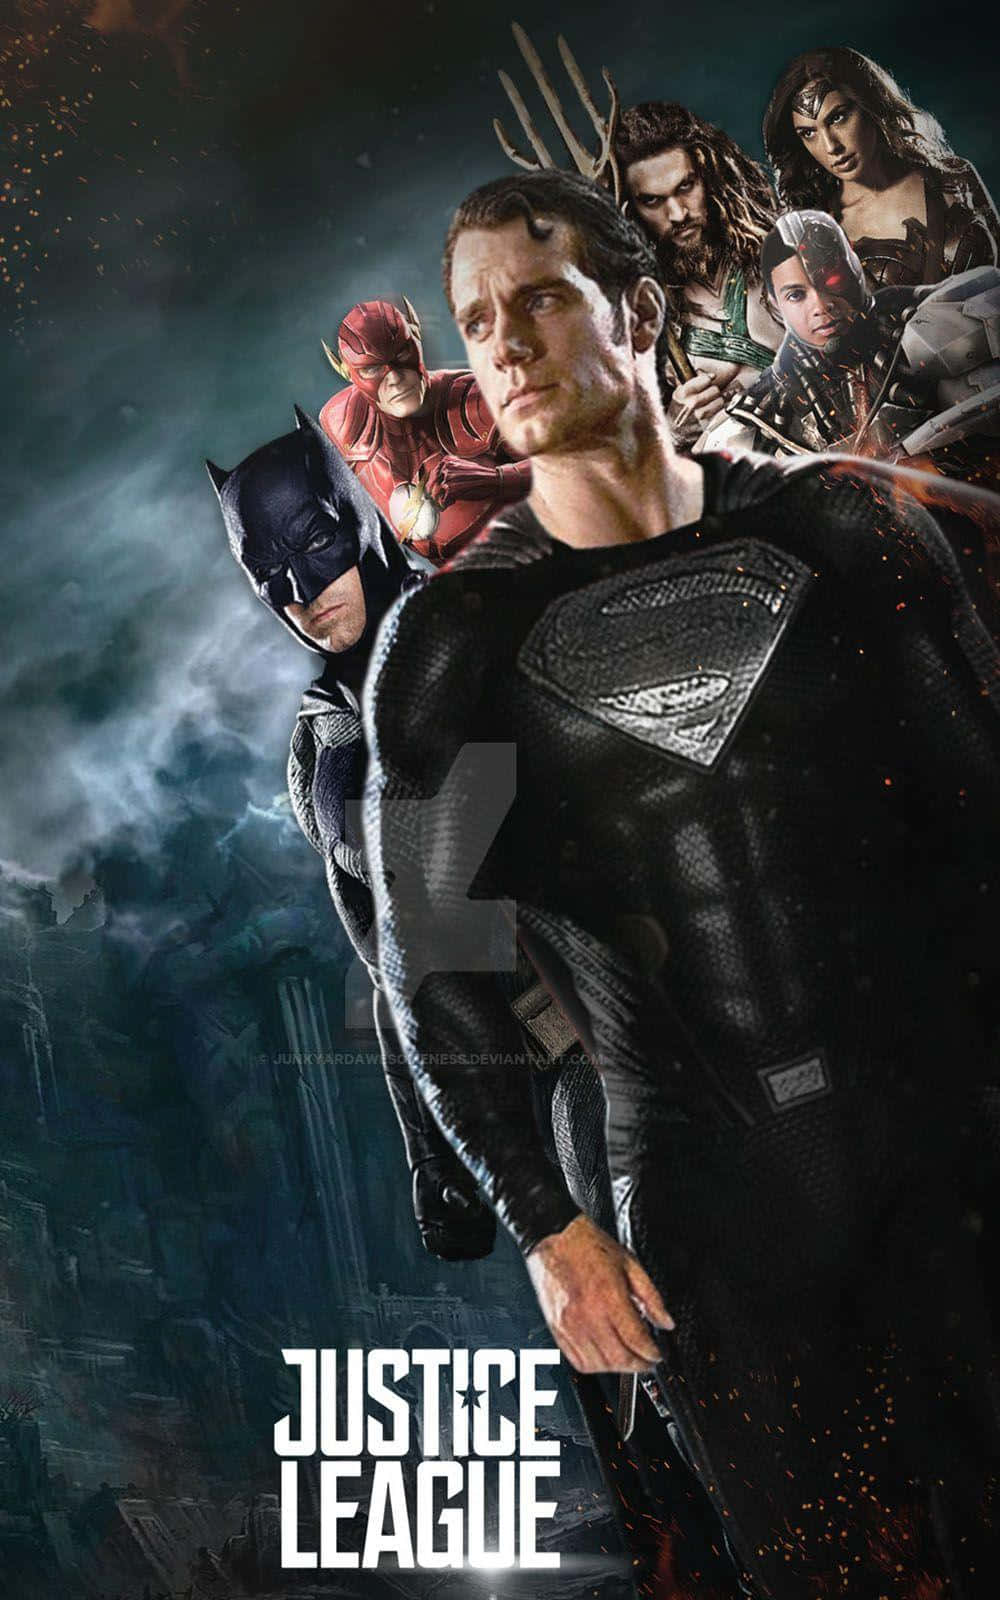 Ungruppo Diversificato Di Supereroi Forma La Justice League Di Zack Snyder. Sfondo